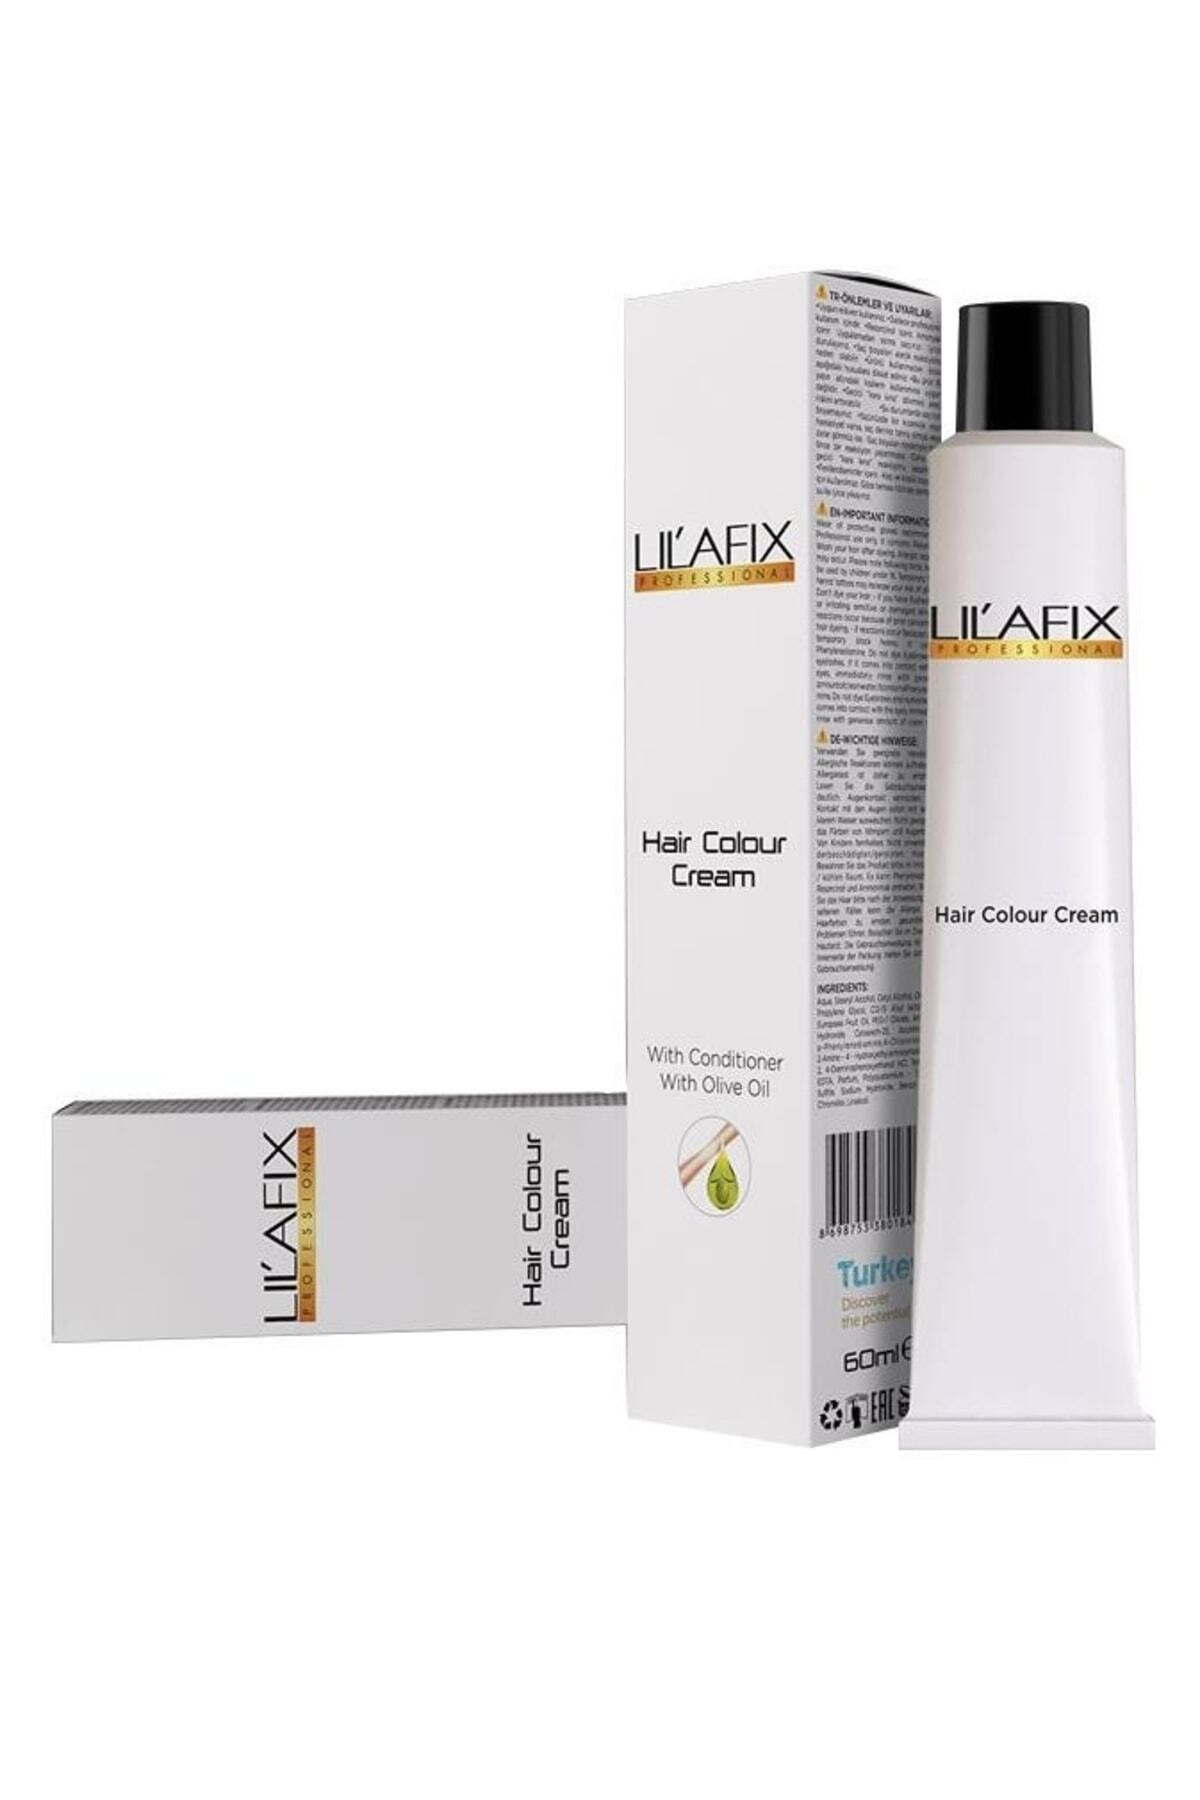 Lilafix Kalıcı Tüp Saç Boyası Doğal Görünüm 10/1 Platin Sarısı 60ml Buk24